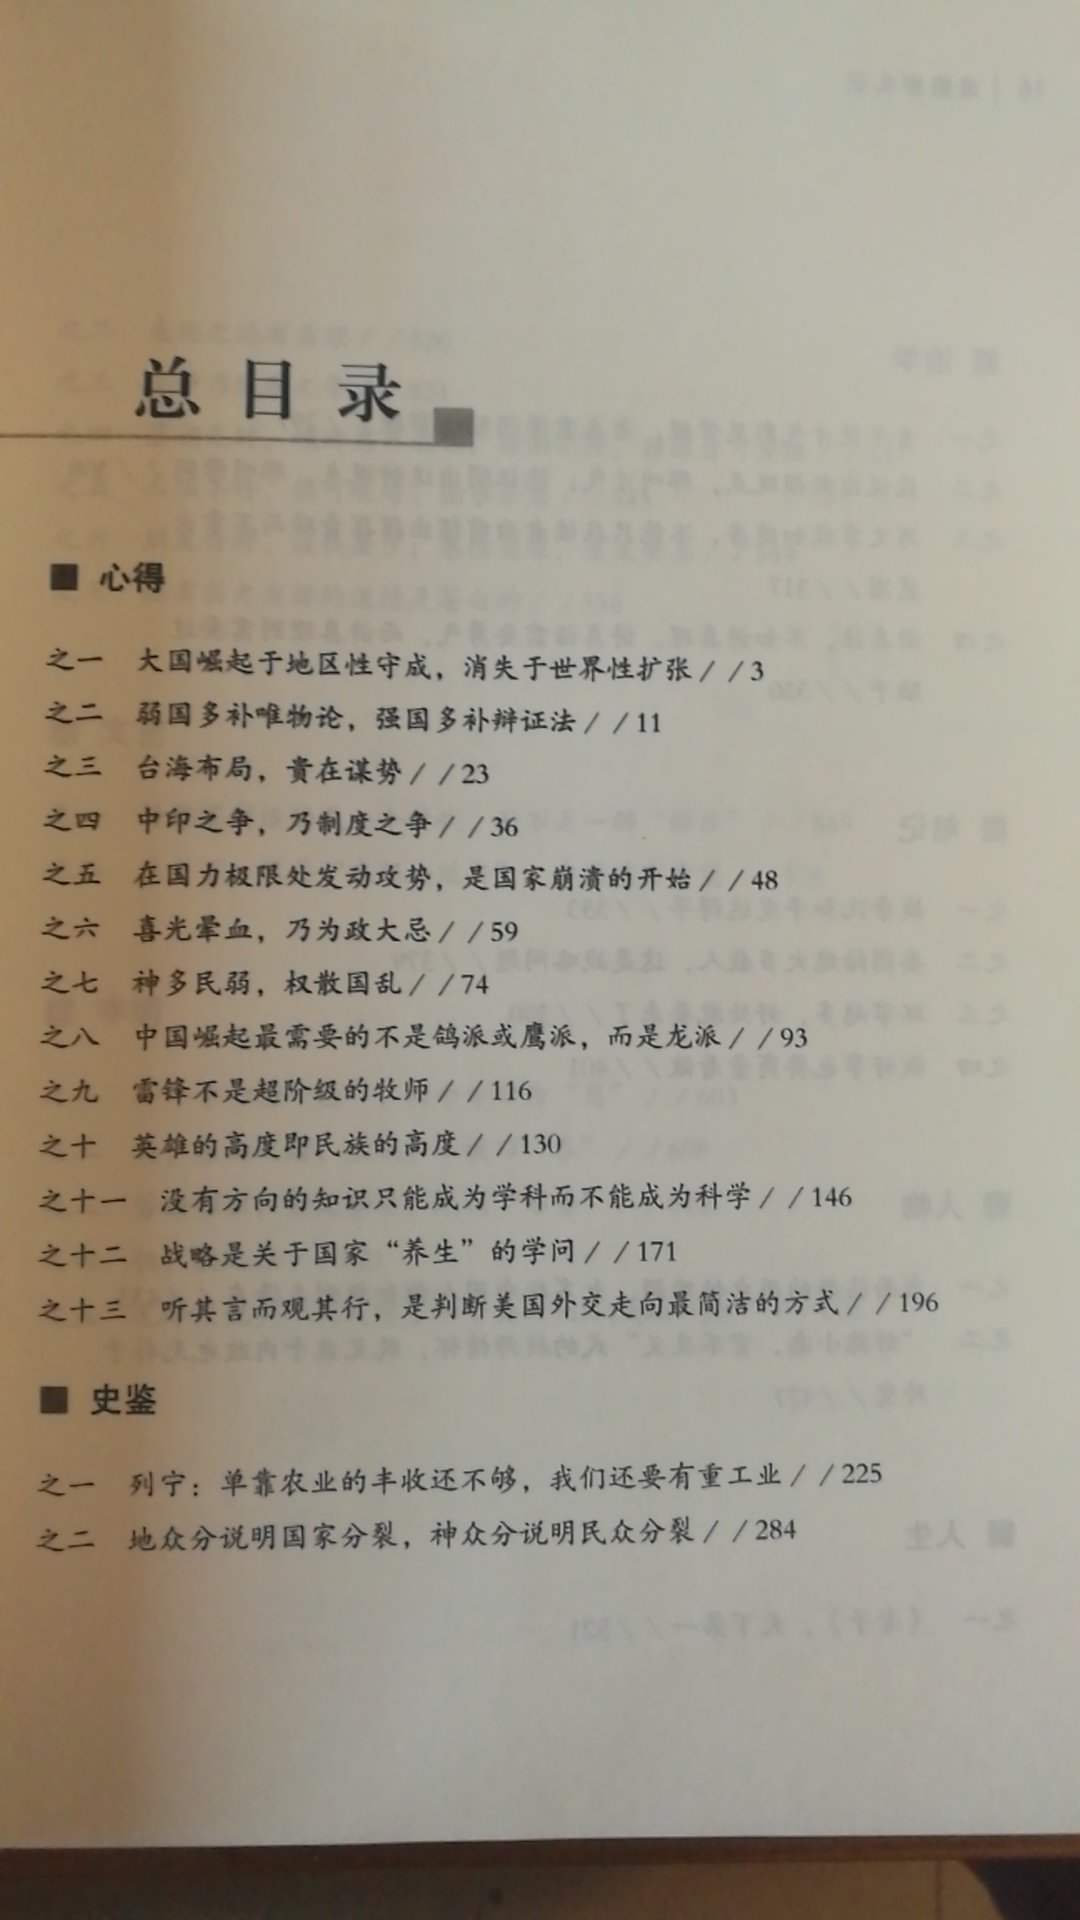 张文木教授的书，主要是思想的记录，就像谈话一样，可以碰撞出火花，值得一读